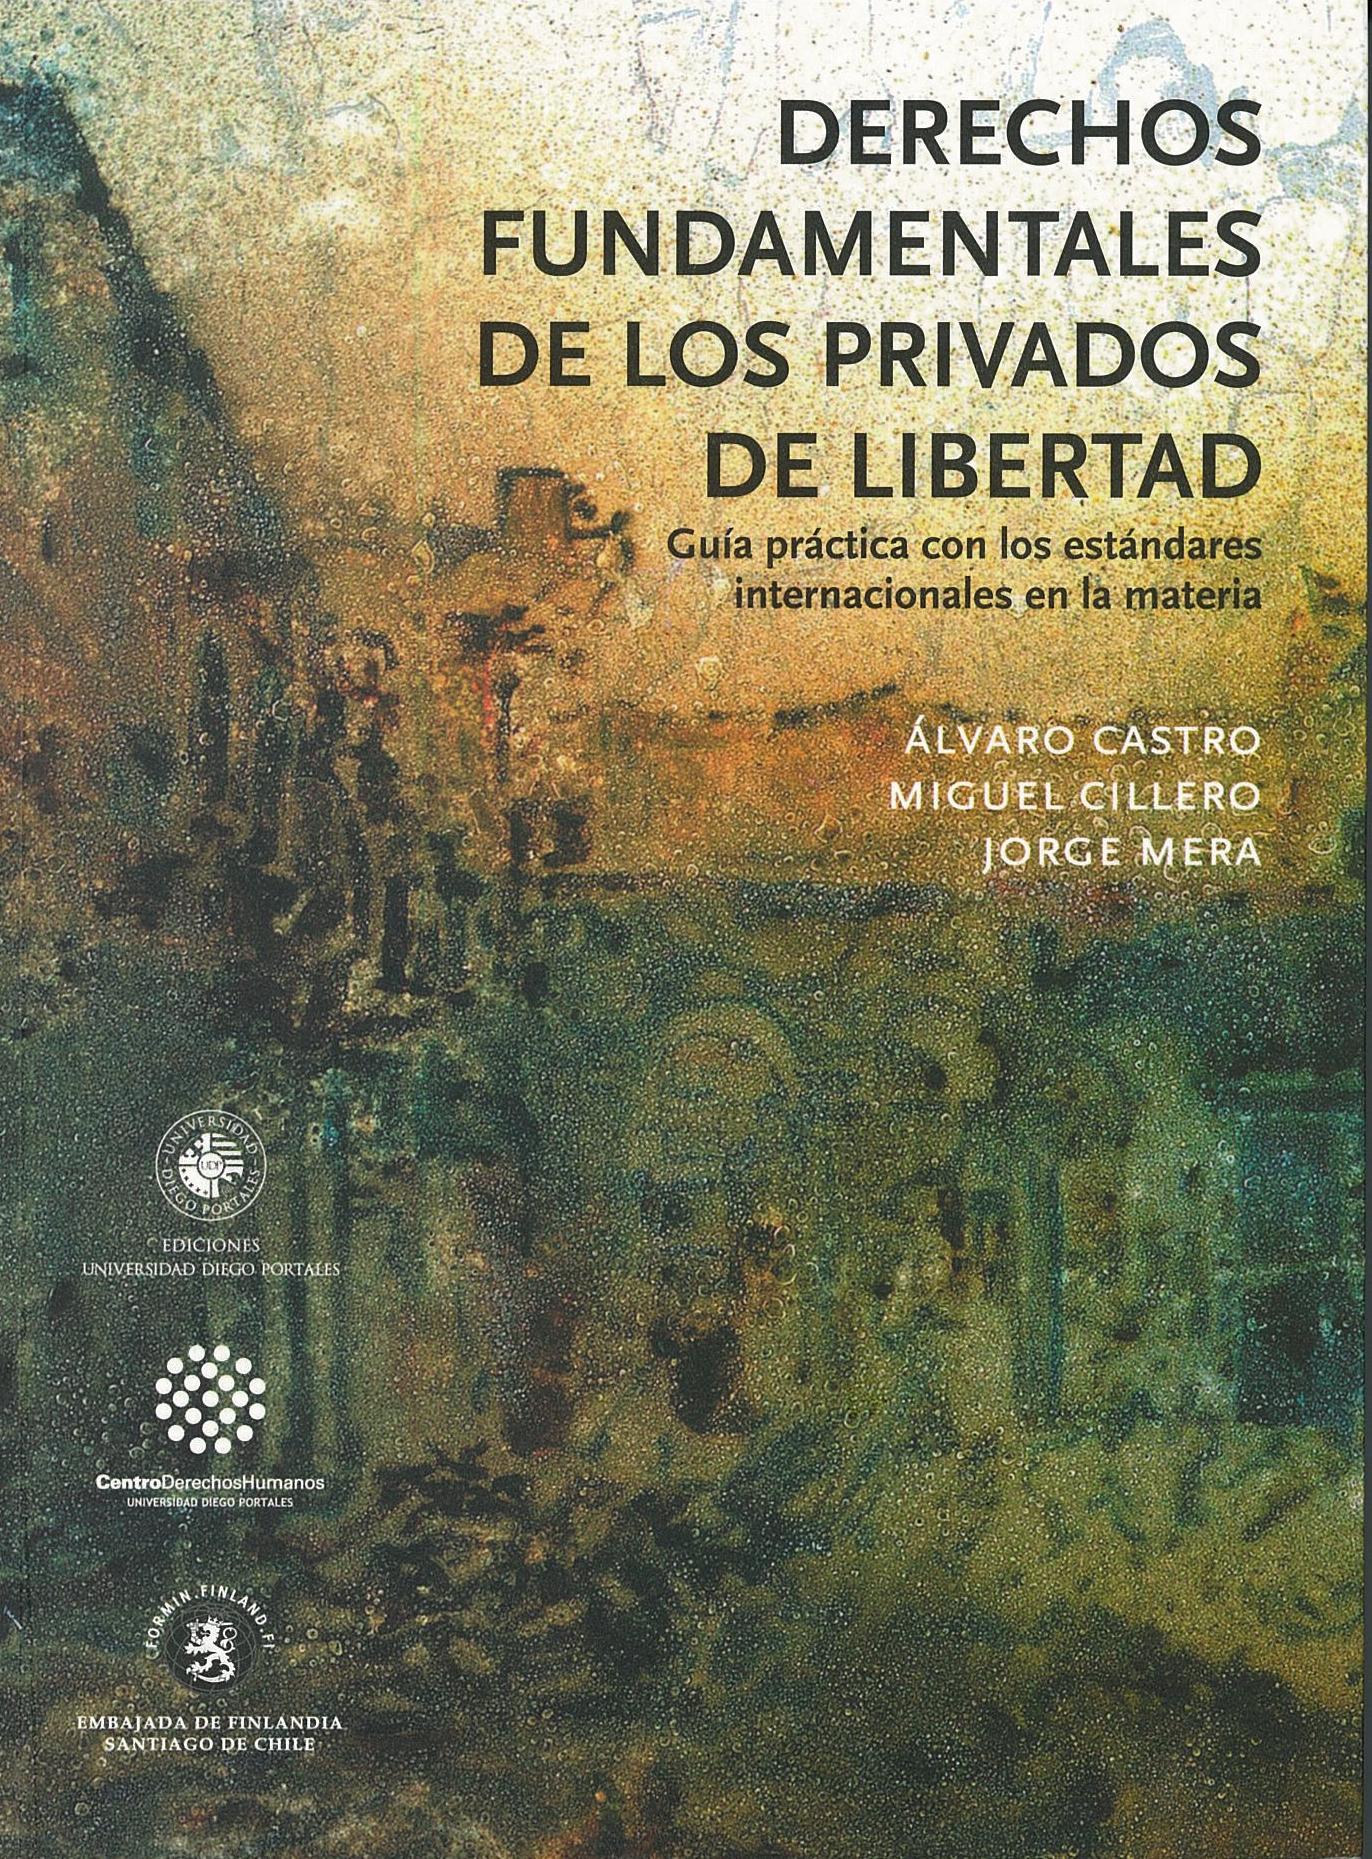 Derechos fundamentales de los privados de libertad: Guía práctica con los estándares internacionales en la materia